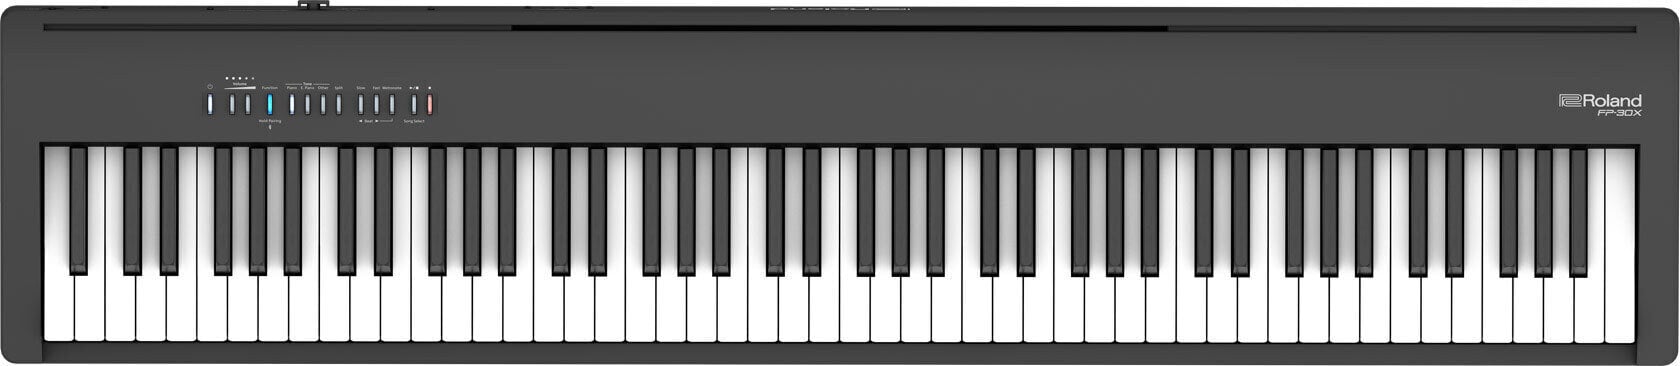 Színpadi zongora Roland FP 30X BK Színpadi zongora